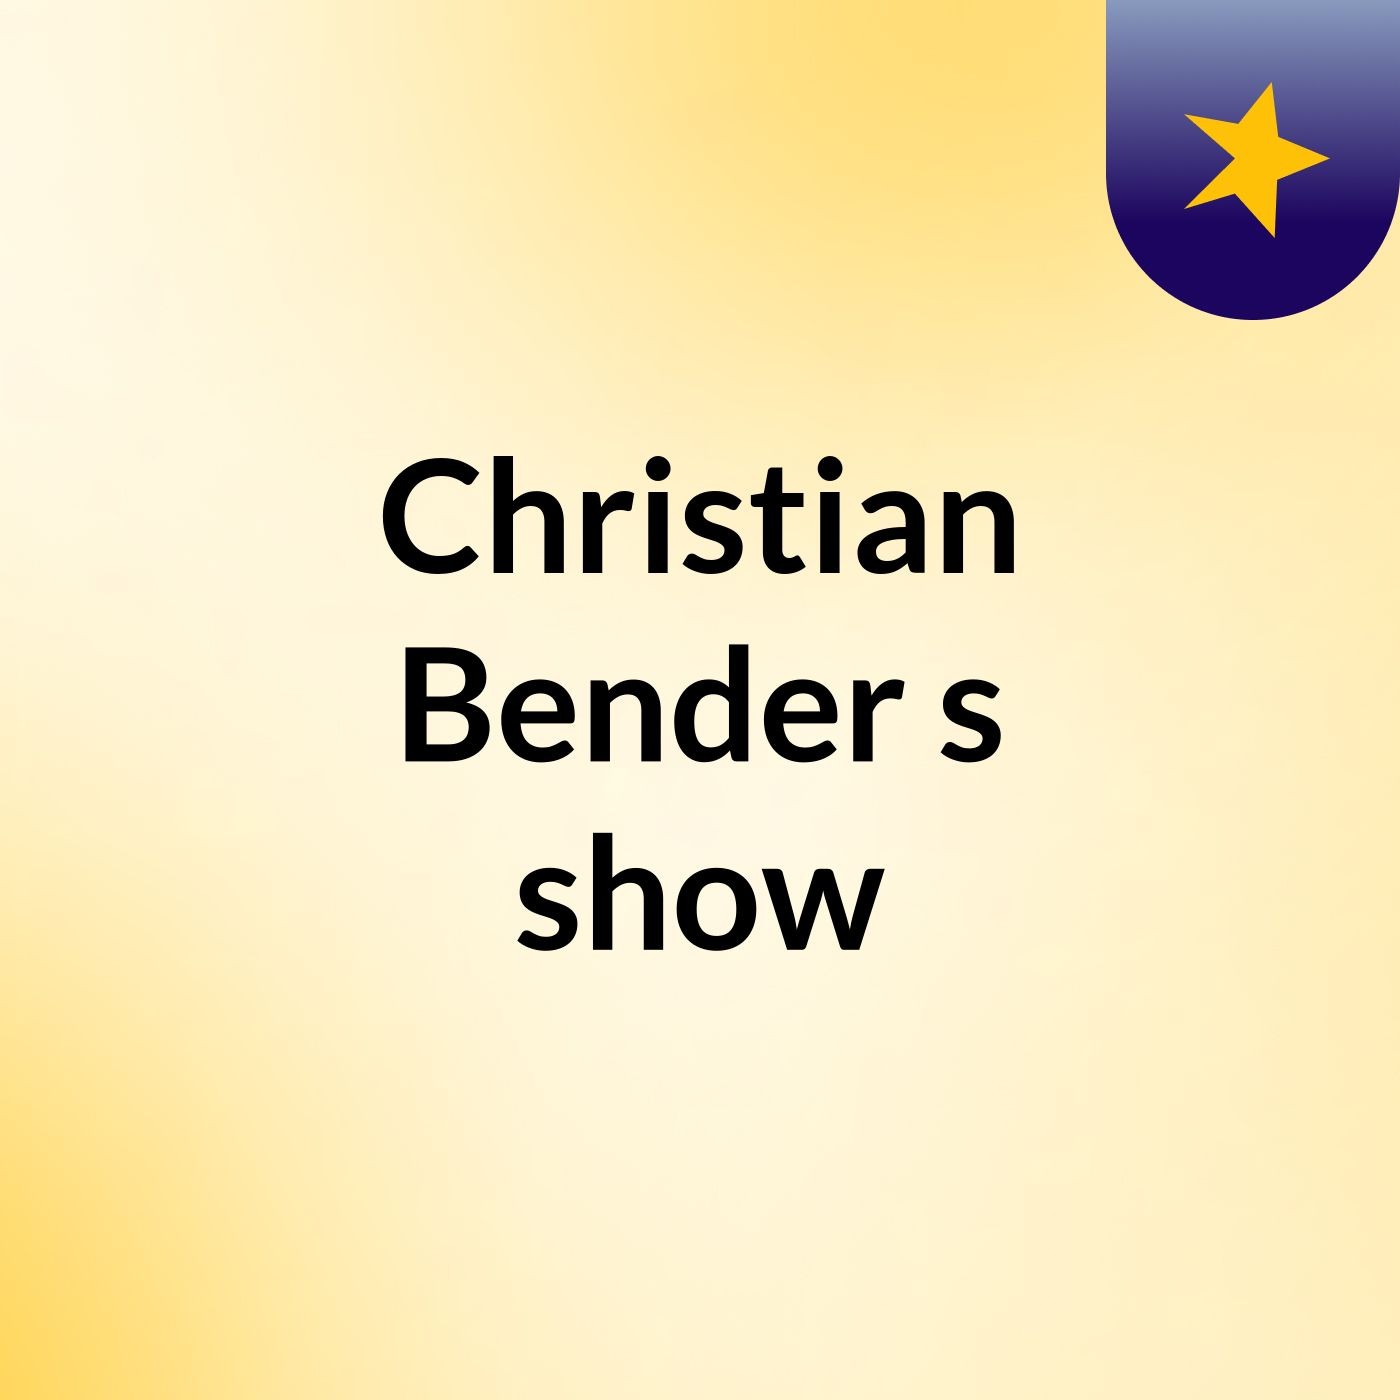 Christian Bender's show